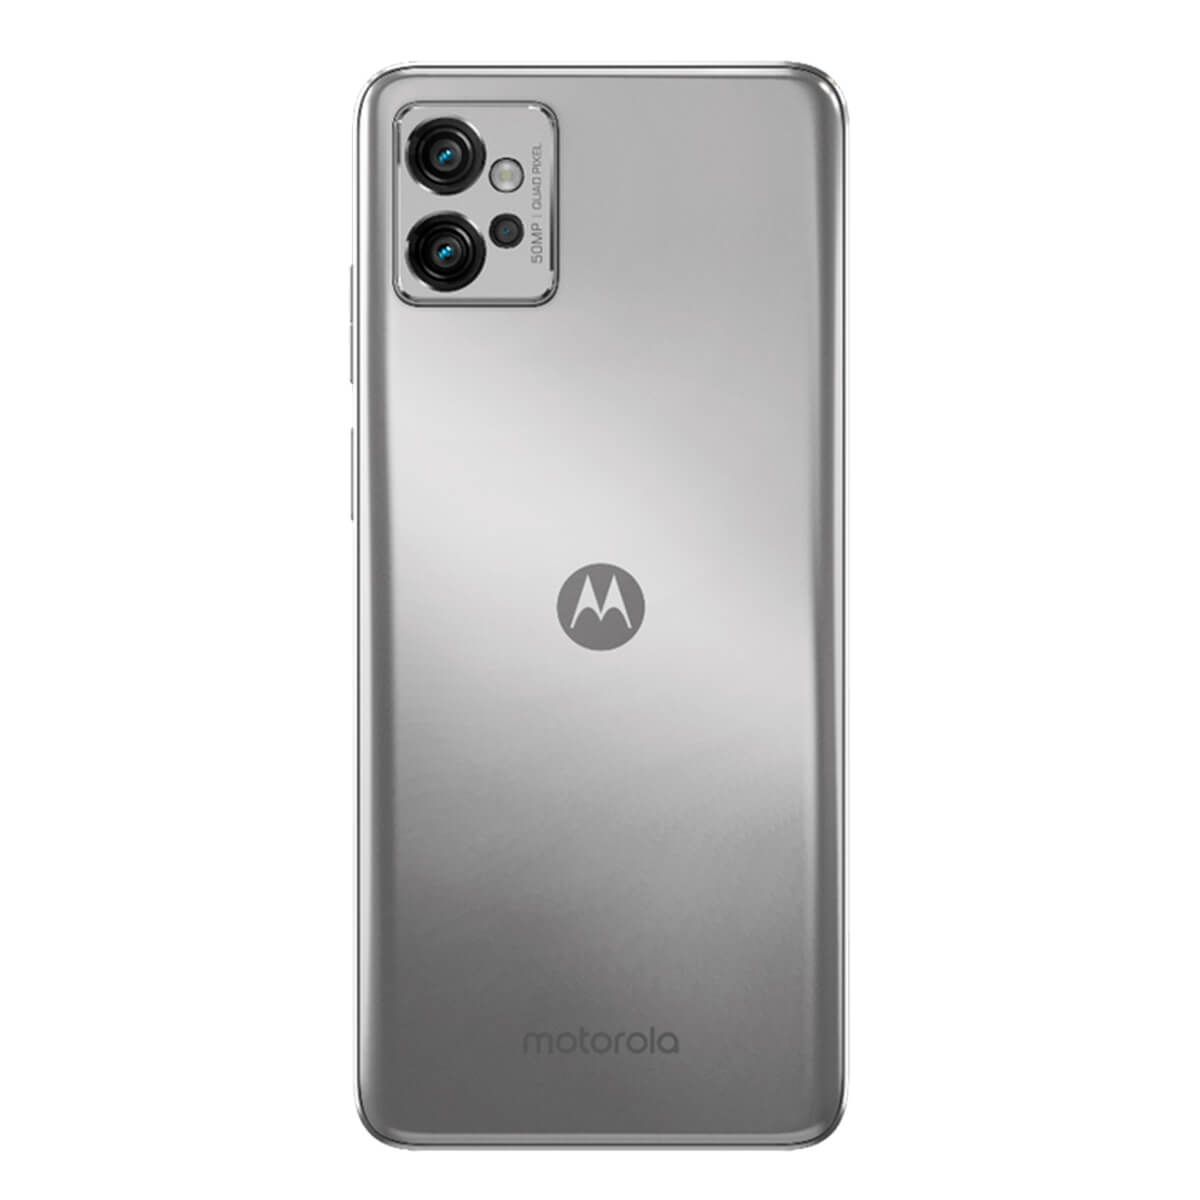 Motorola Moto G22 4GB/64GB Blue (Iceberg Blue) Dual SIM XT2231-2